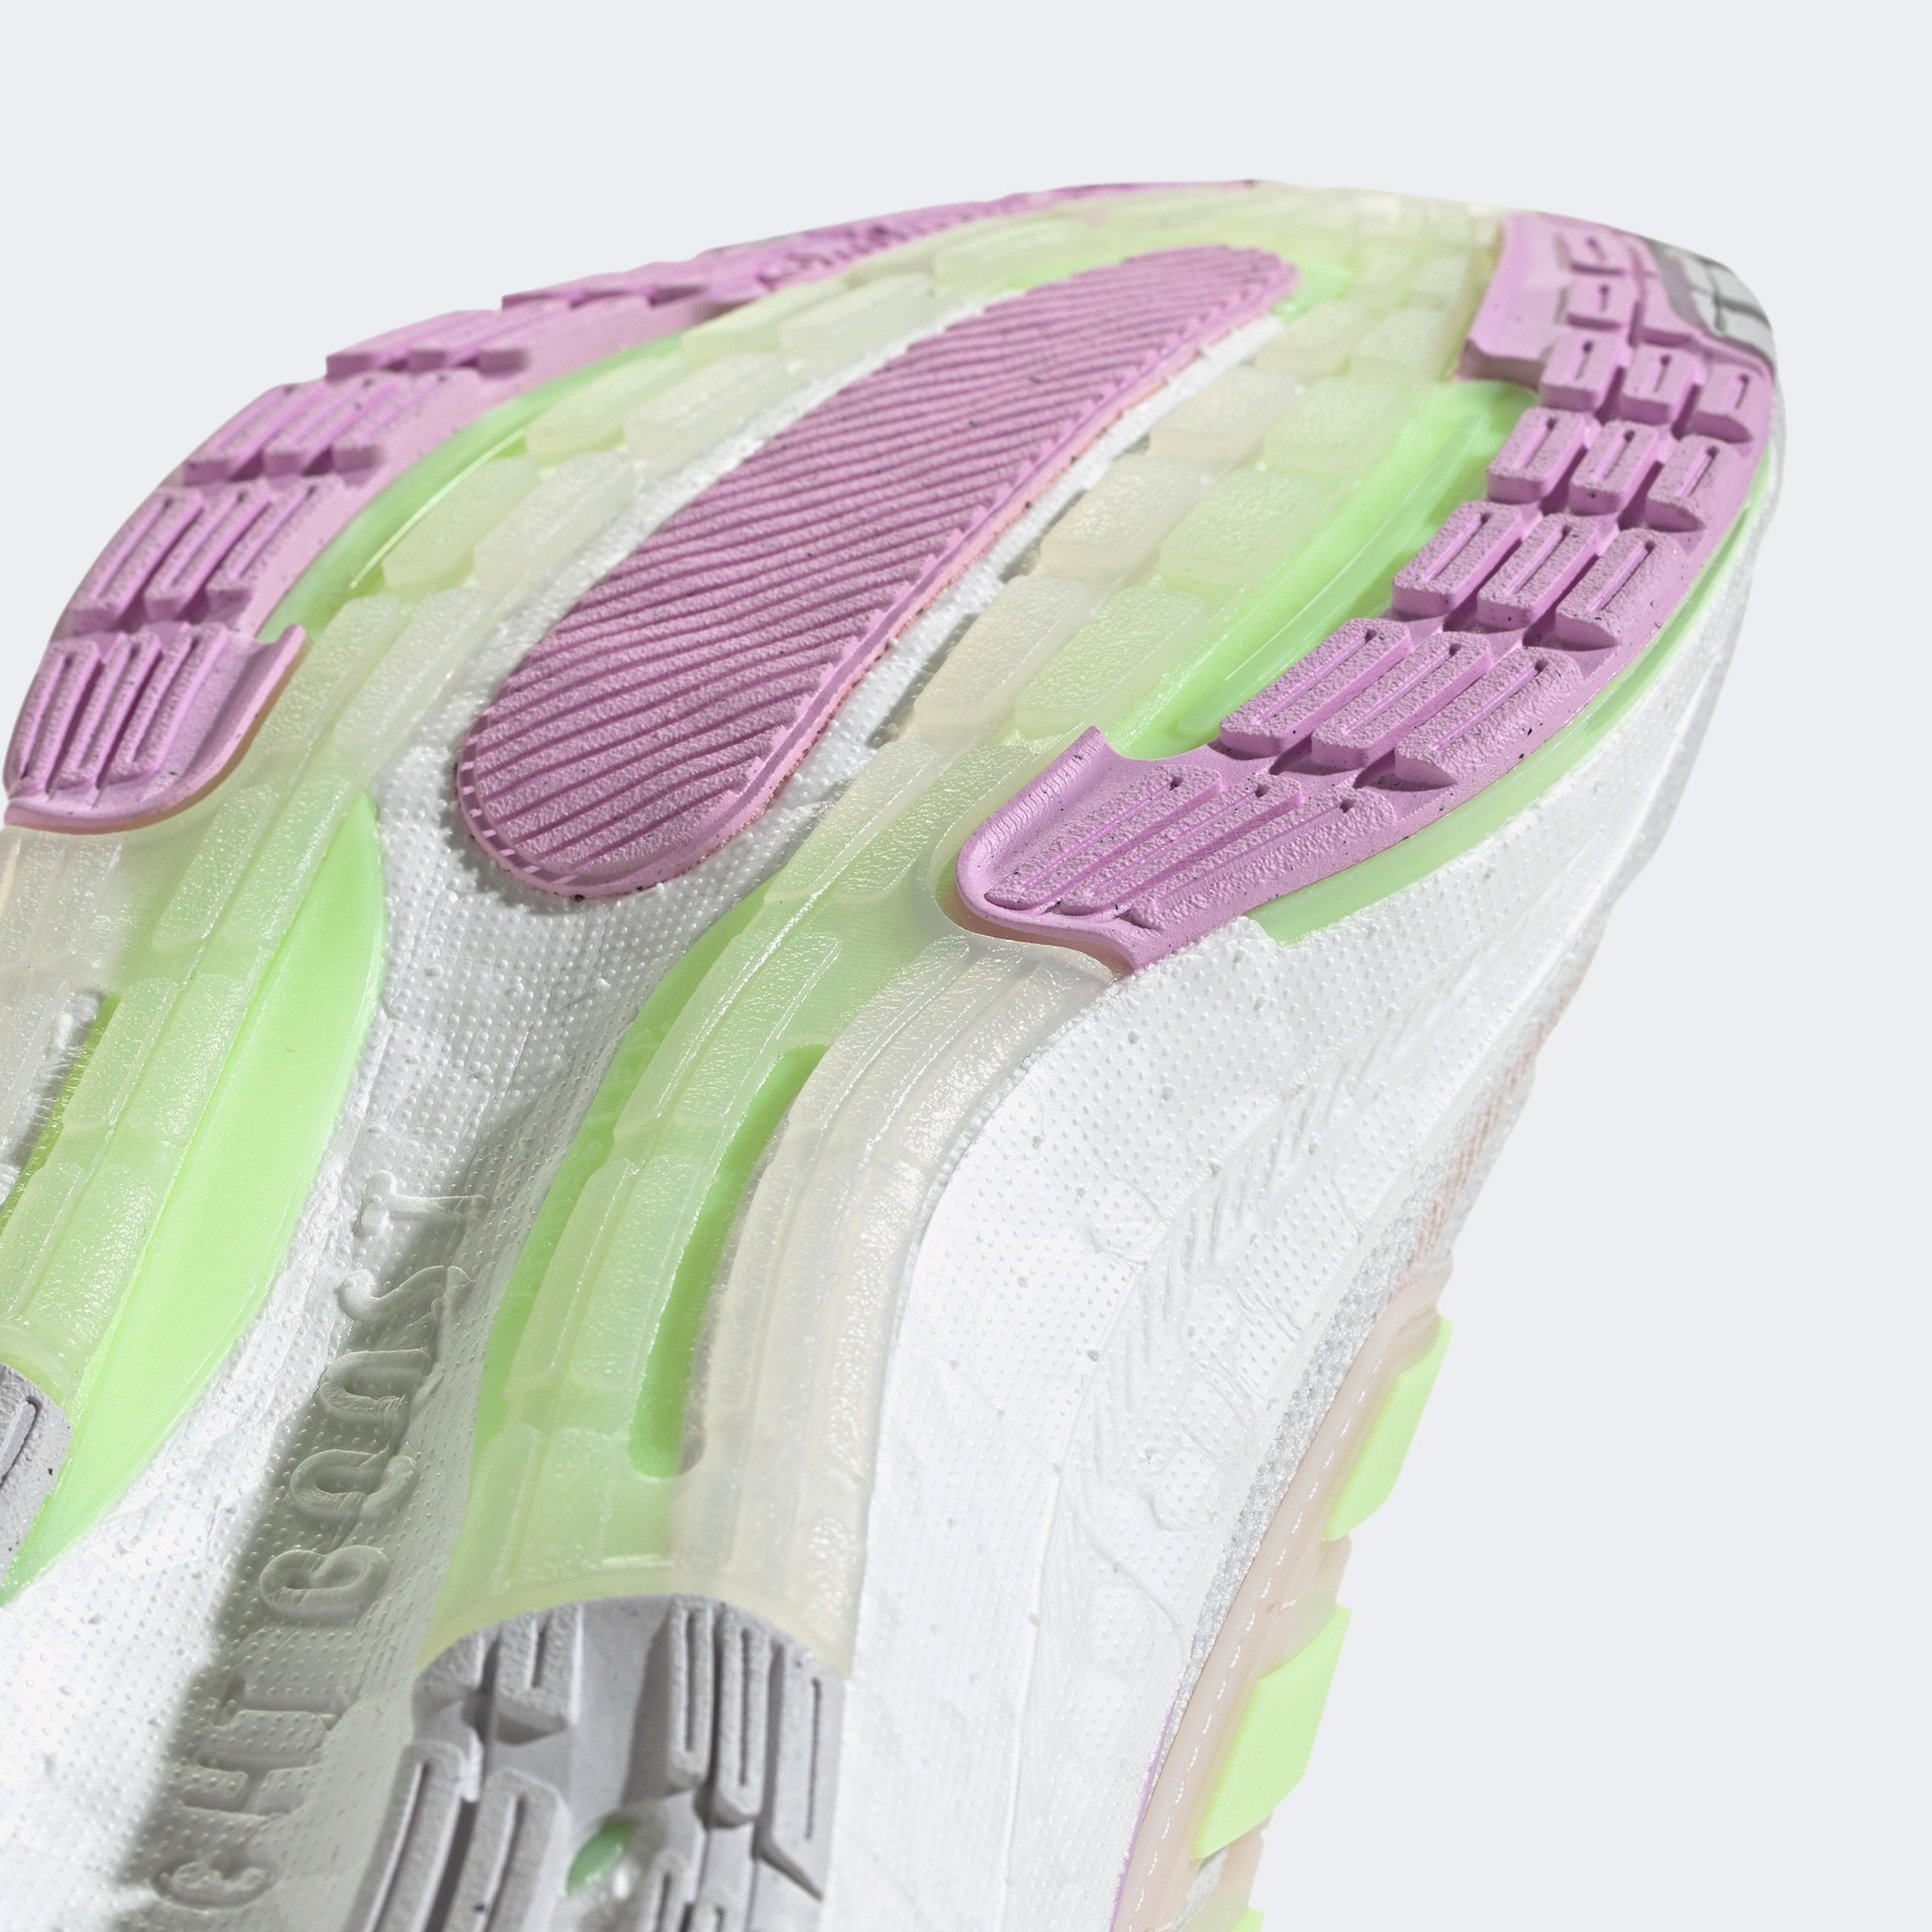 adidas Ultraboost Light Kadın Beyaz Sneaker